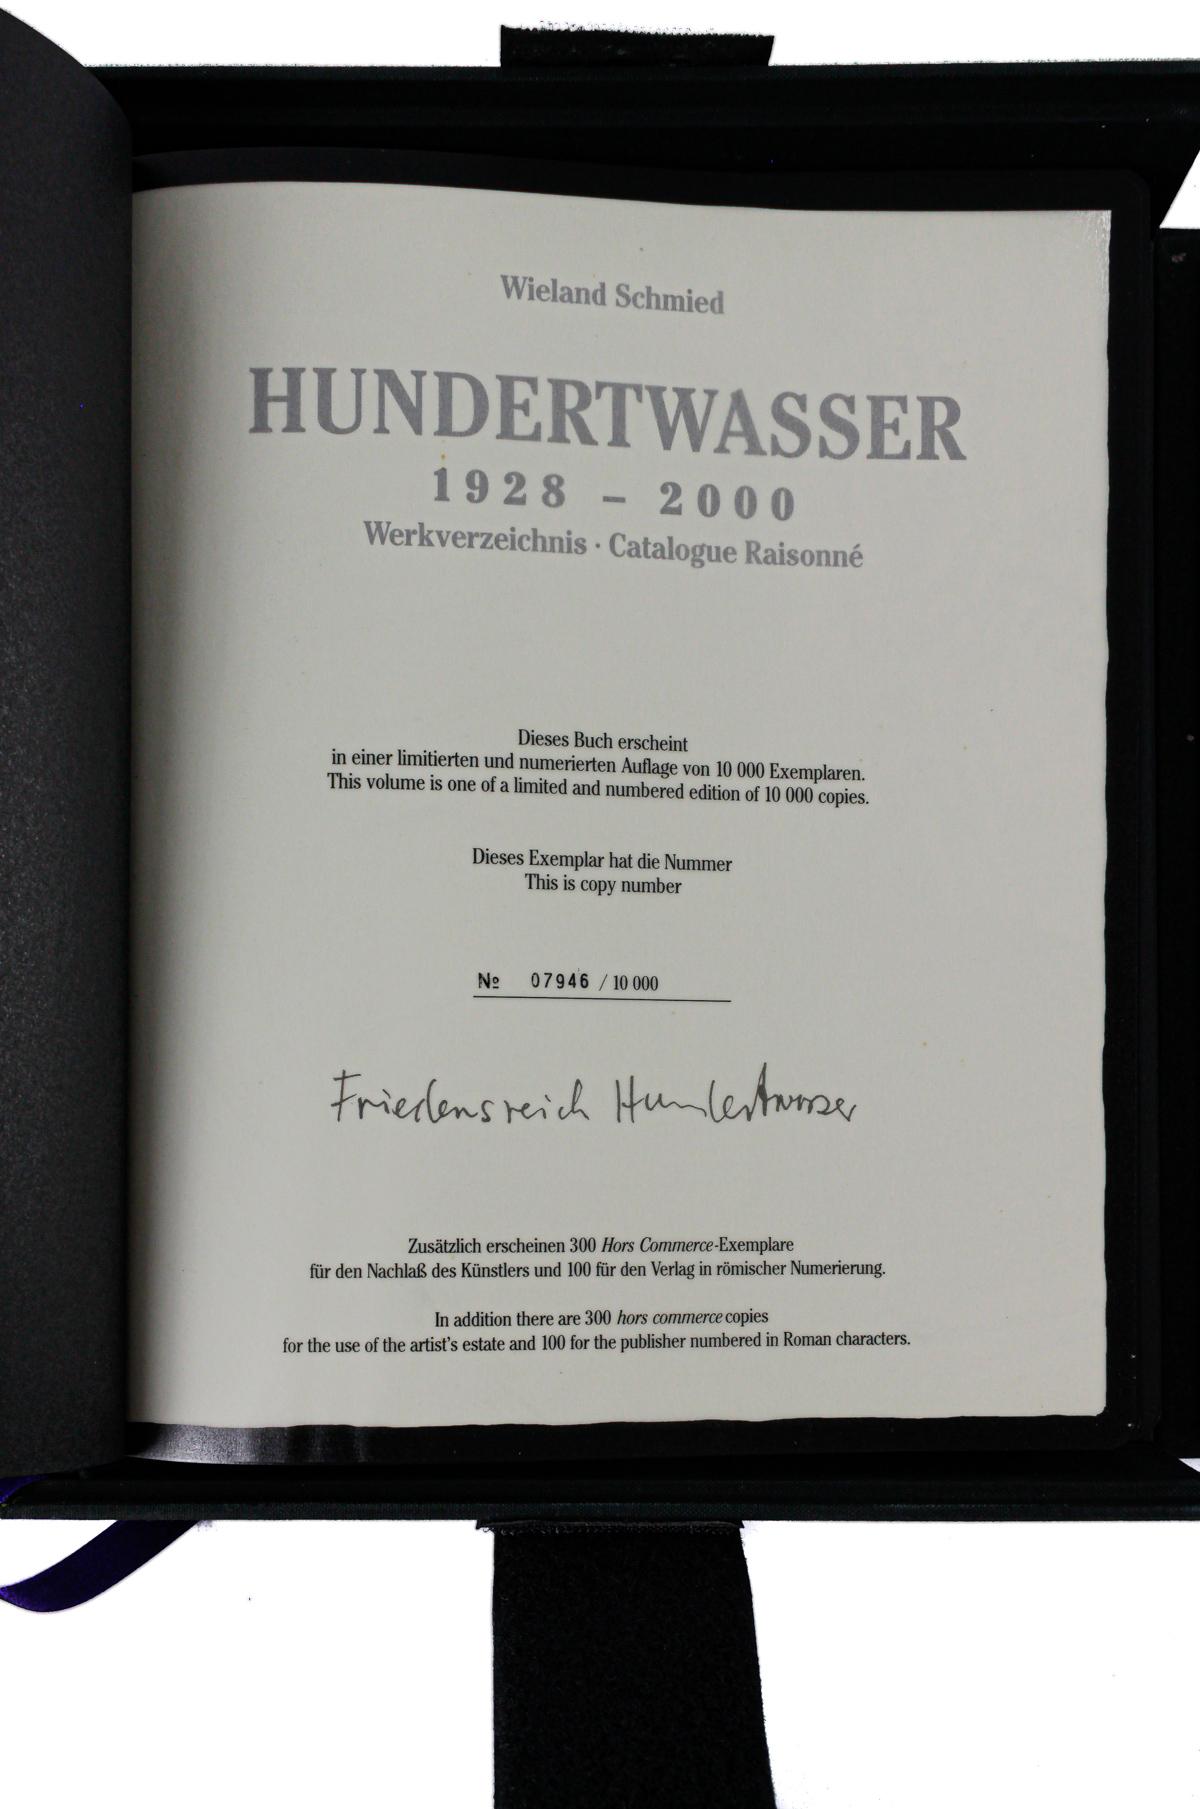 "HUNDERTWASSER, 1928-2000"